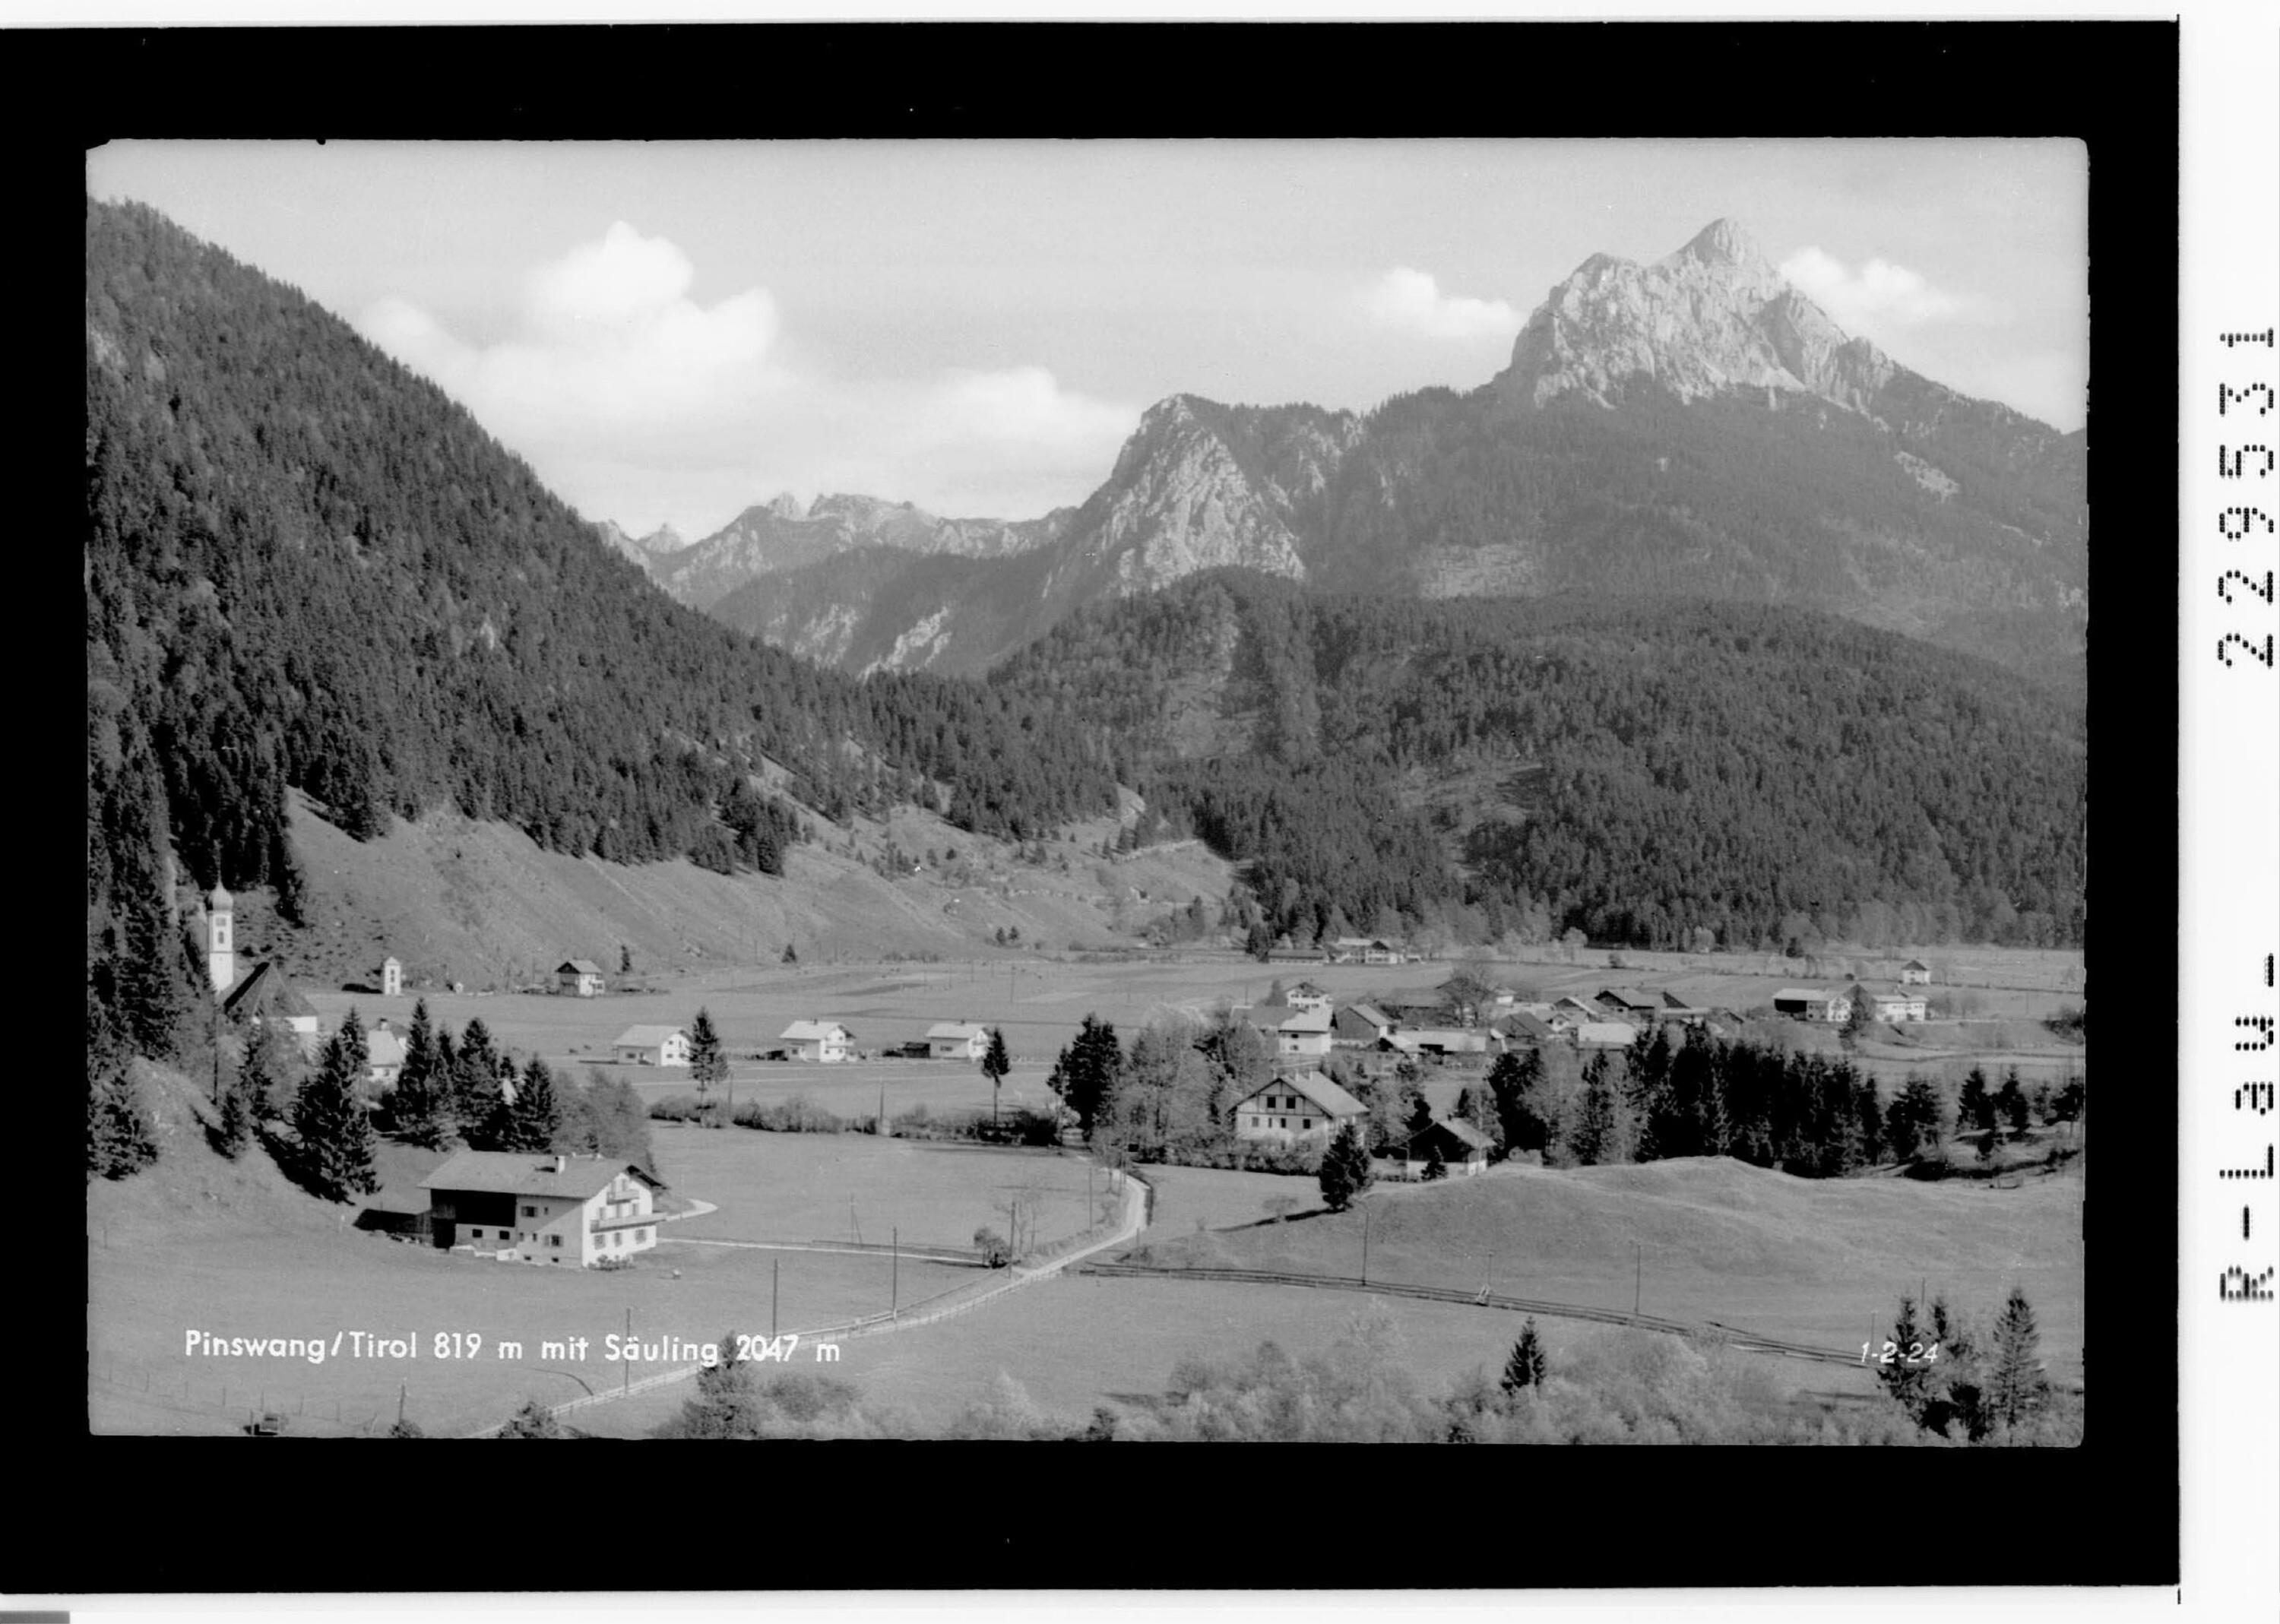 Pinswang / Tirol 819 m mit Säuling 2047 m></div>


    <hr>
    <div class=